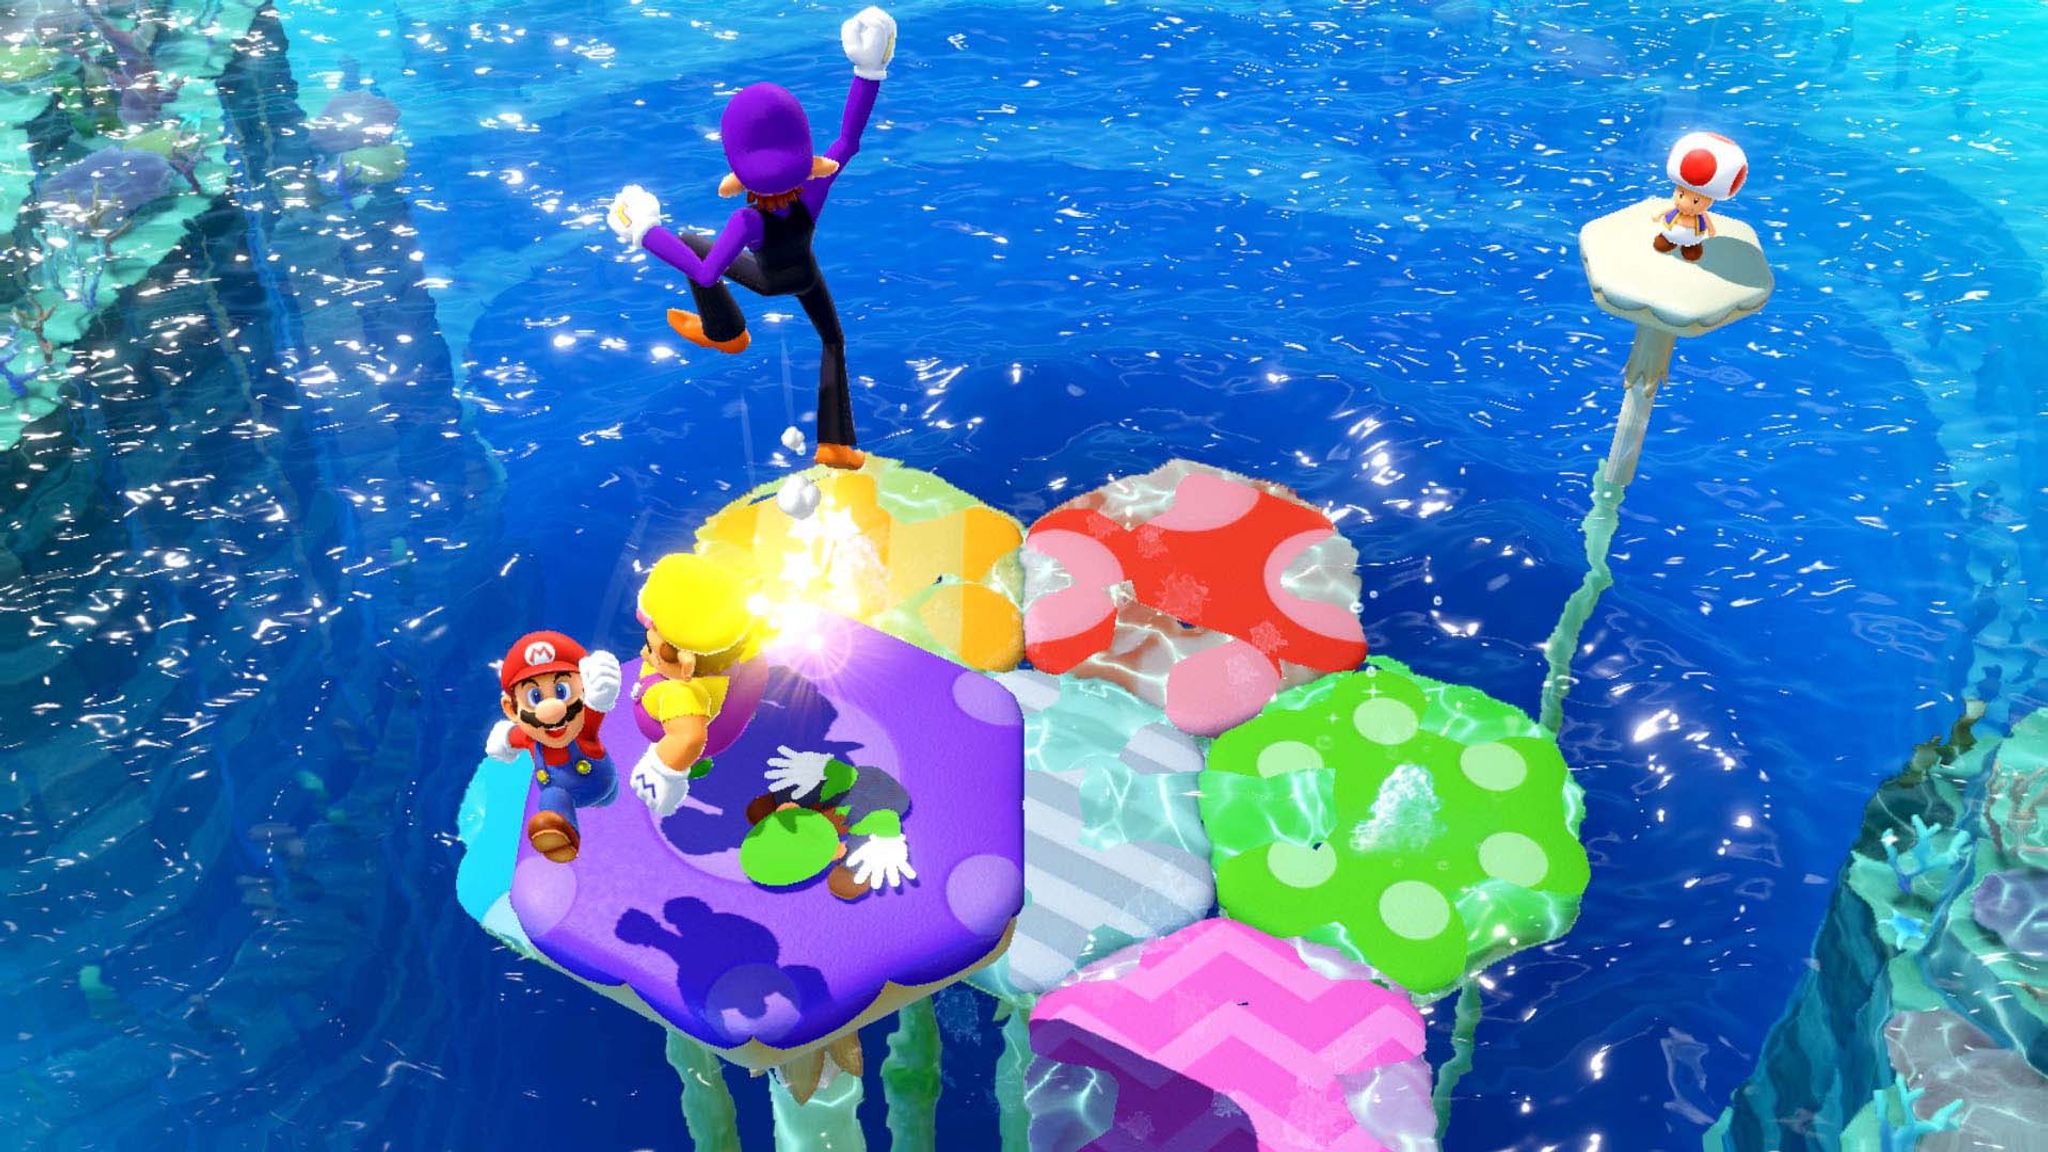 Todos contra todos o en un equipo: "Mario Party Superstars" provee diversión rápida en mini juegos (Foto: Nintendo/dpa )